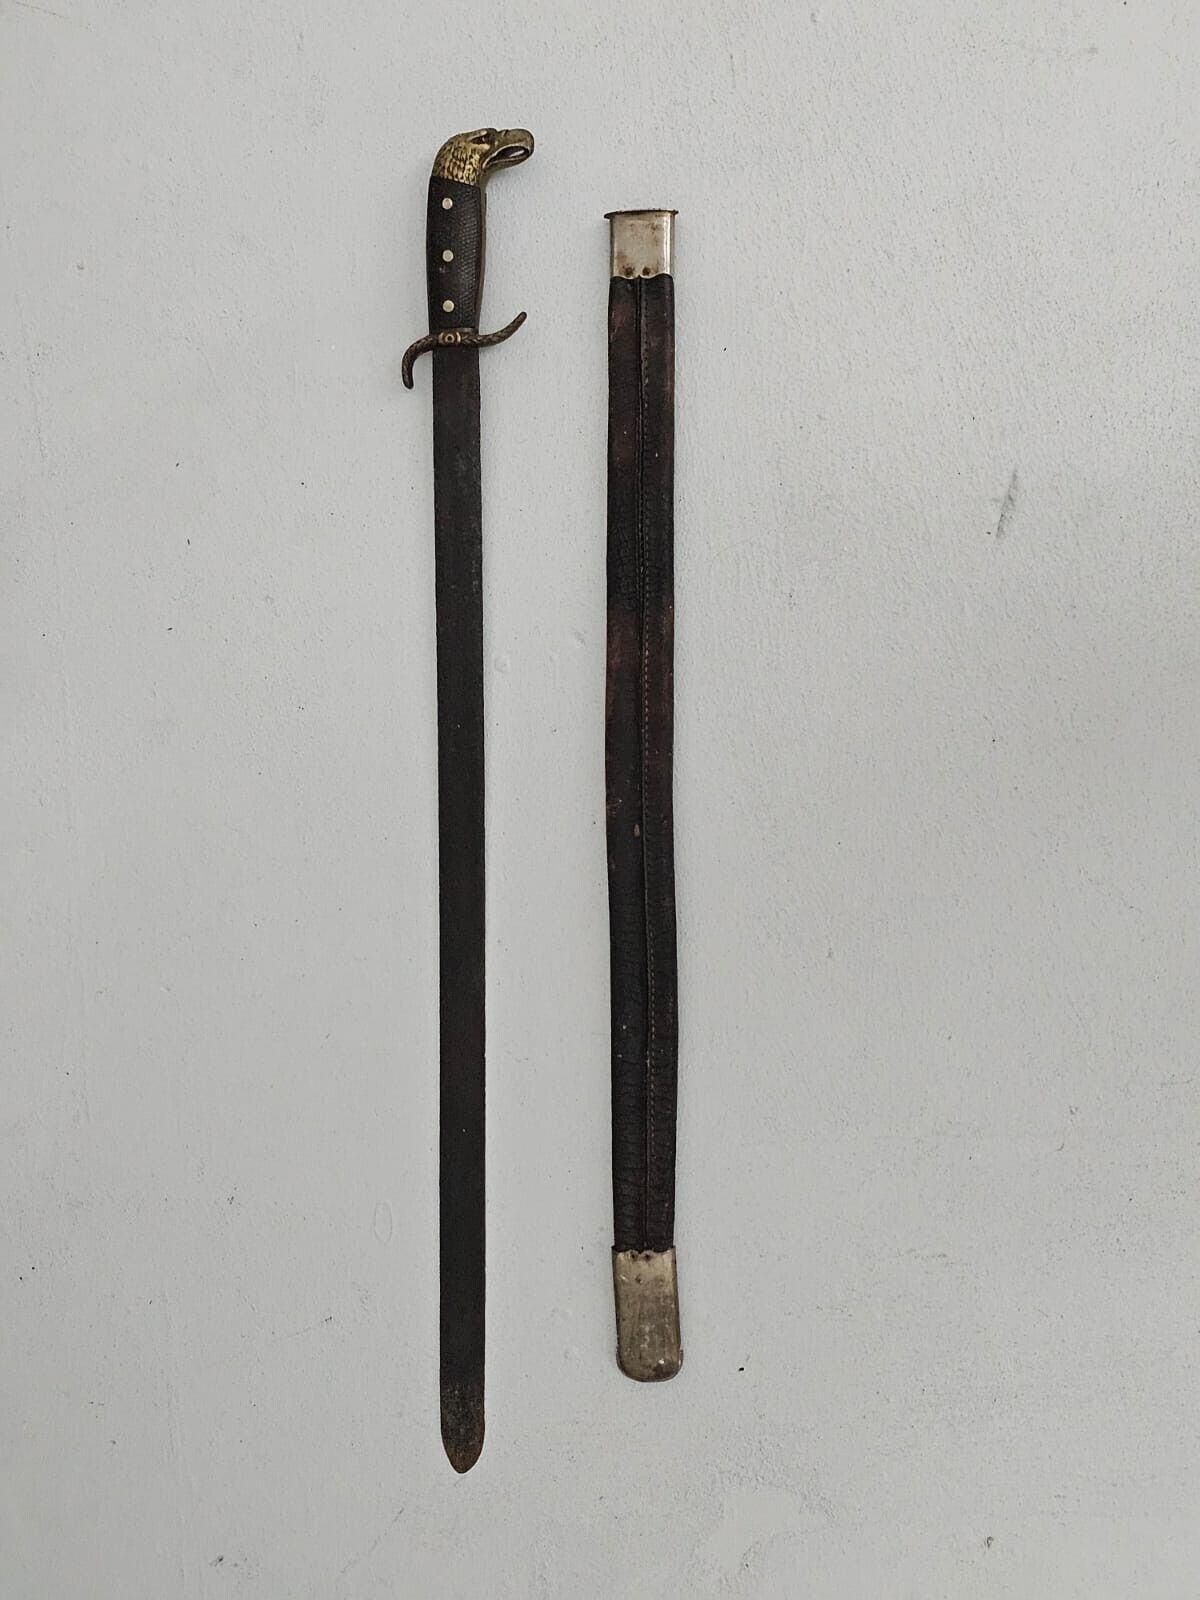 SPANISH AMERICAN WAR COLLINS LEGITIMUS 87 Army Machete Sword MAMBISES 1870s 1895